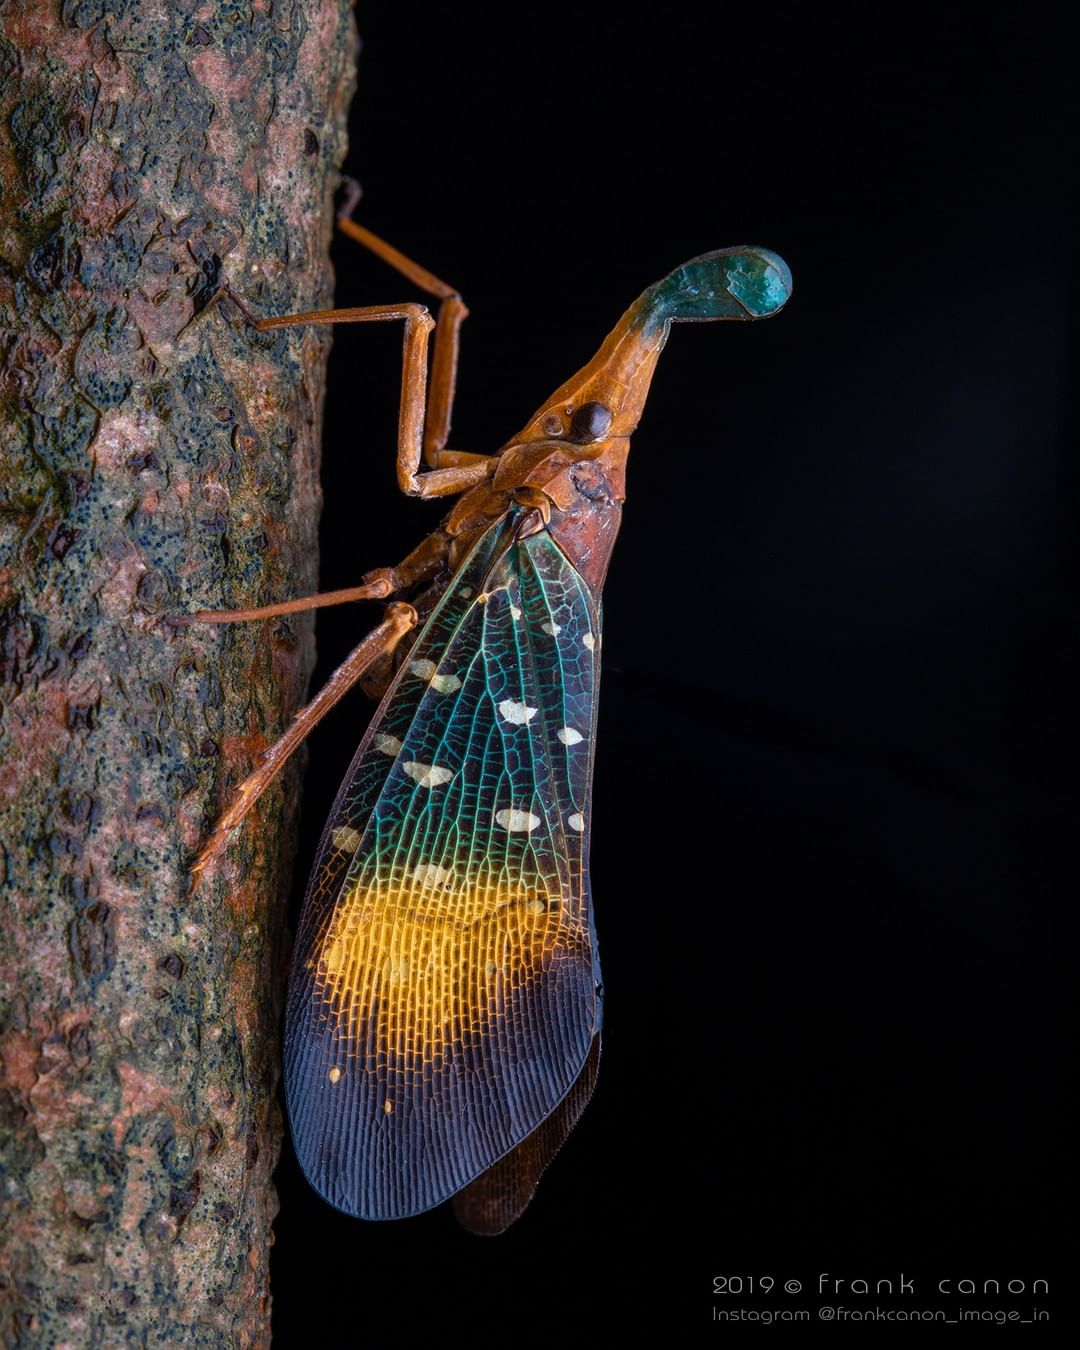 Снимки животных и насекомых от Фрэнка Дешандола Животные